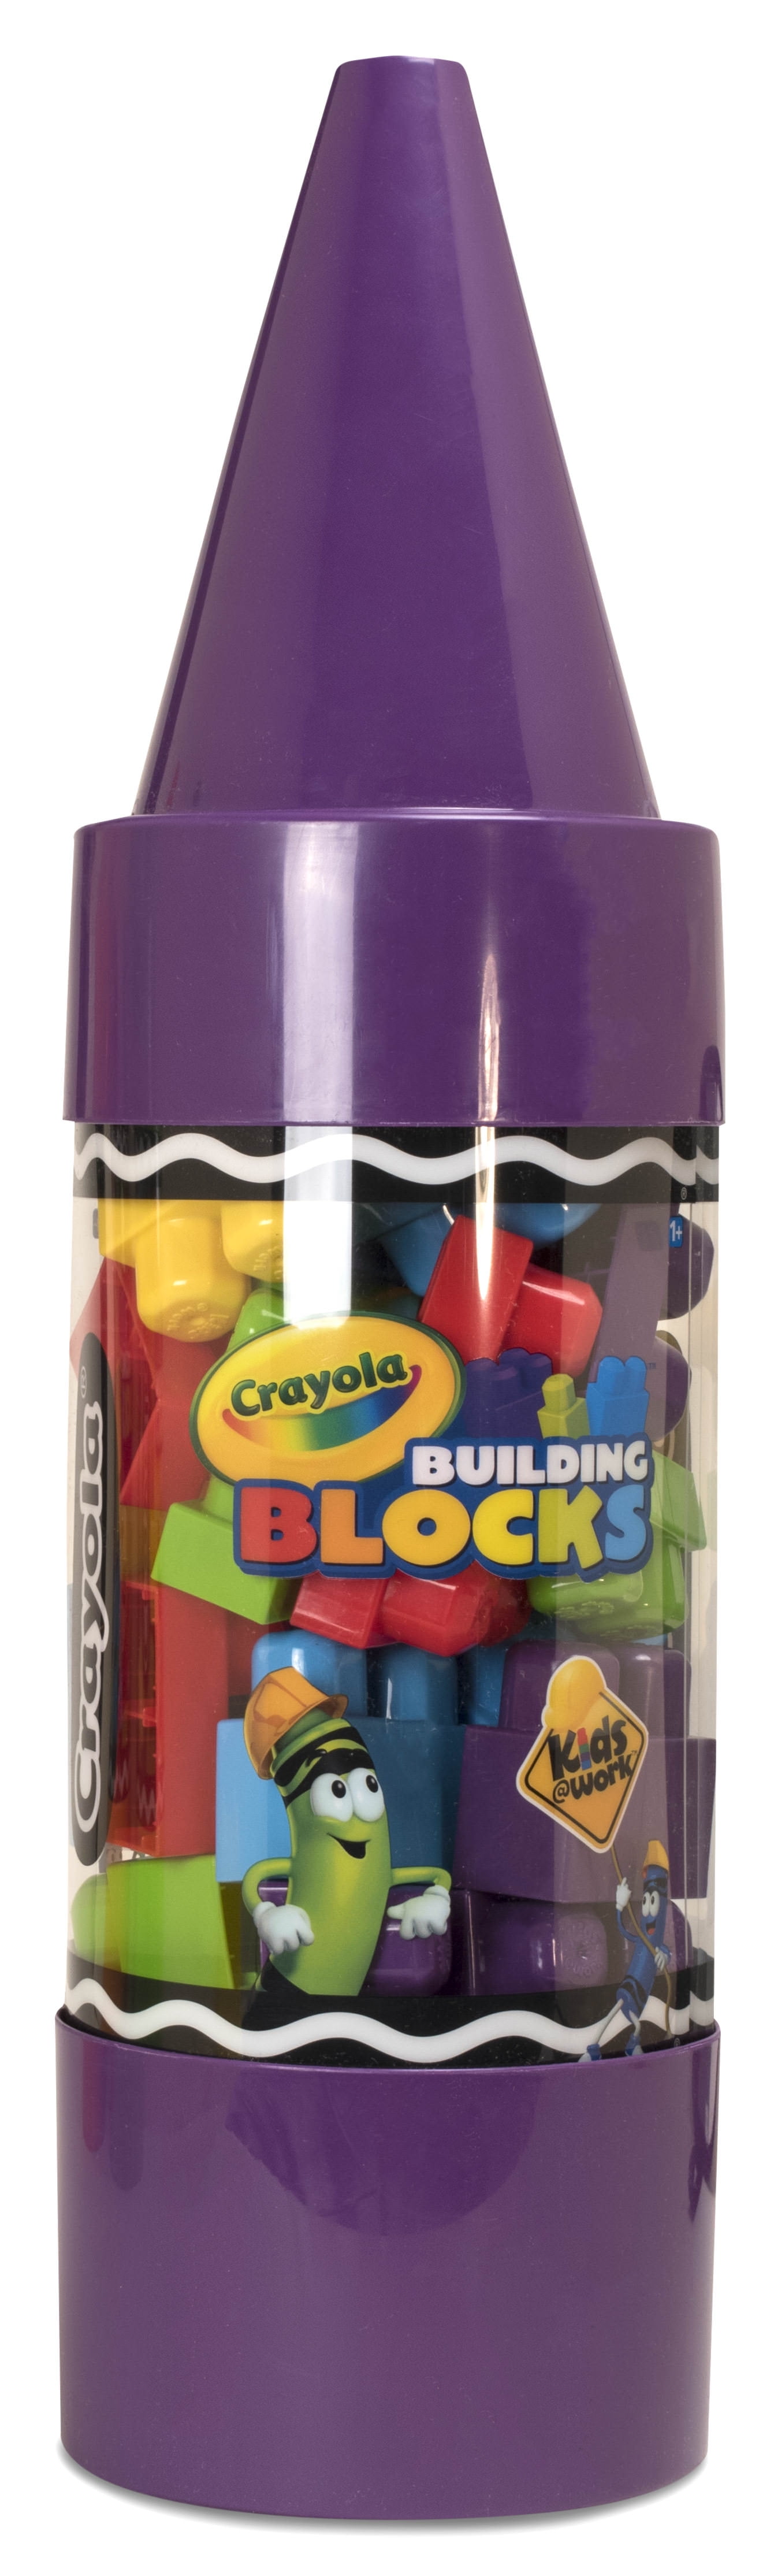 Kids@Work Crayon Building Blocks, 1+, 70 count